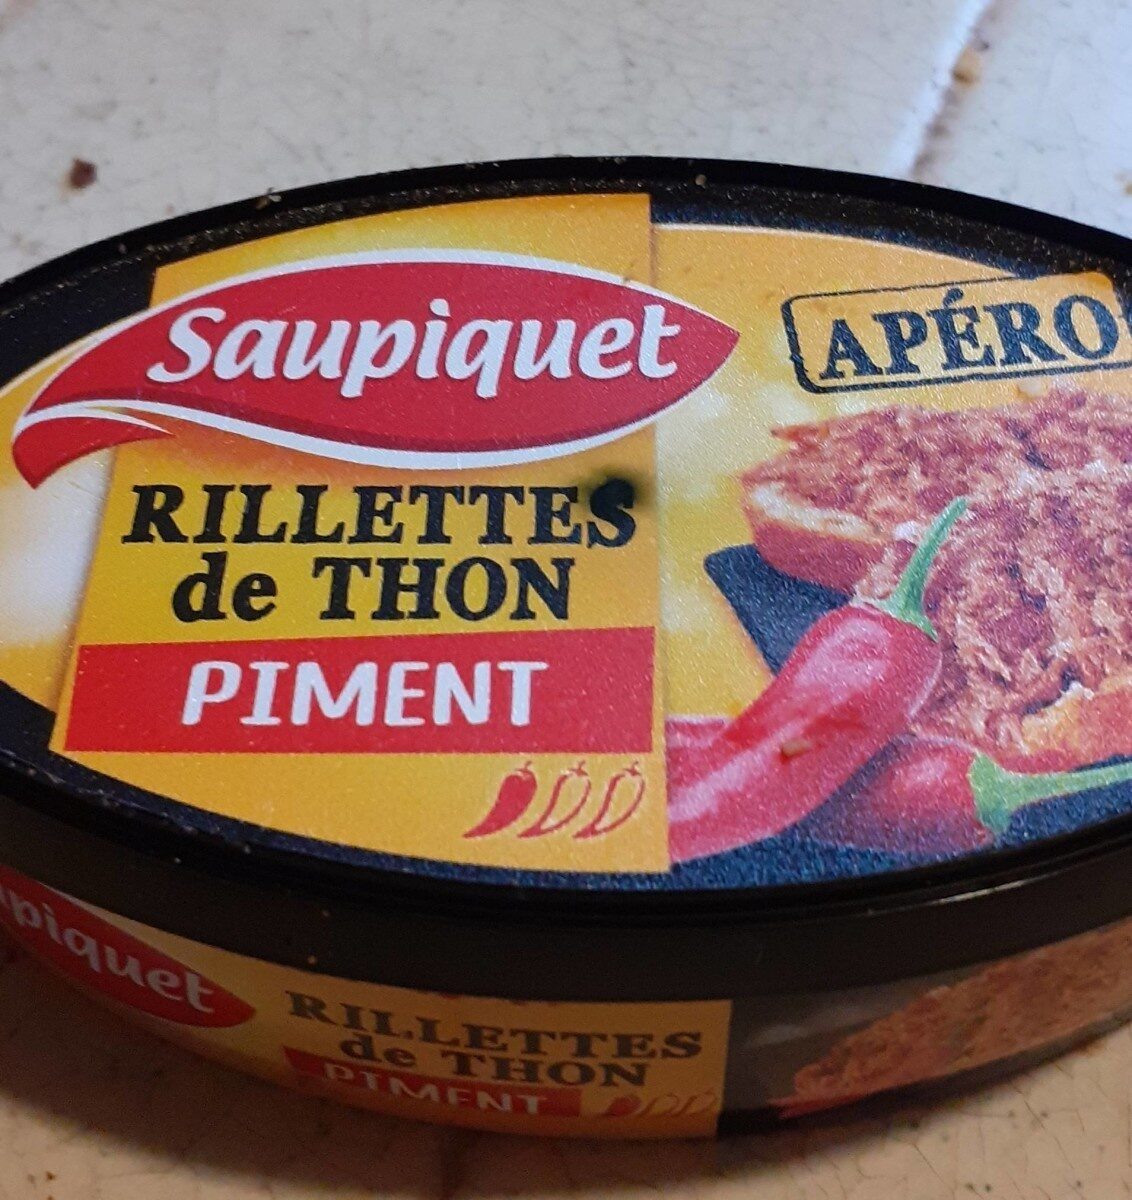 Rillettes de thon piment - Product - fr